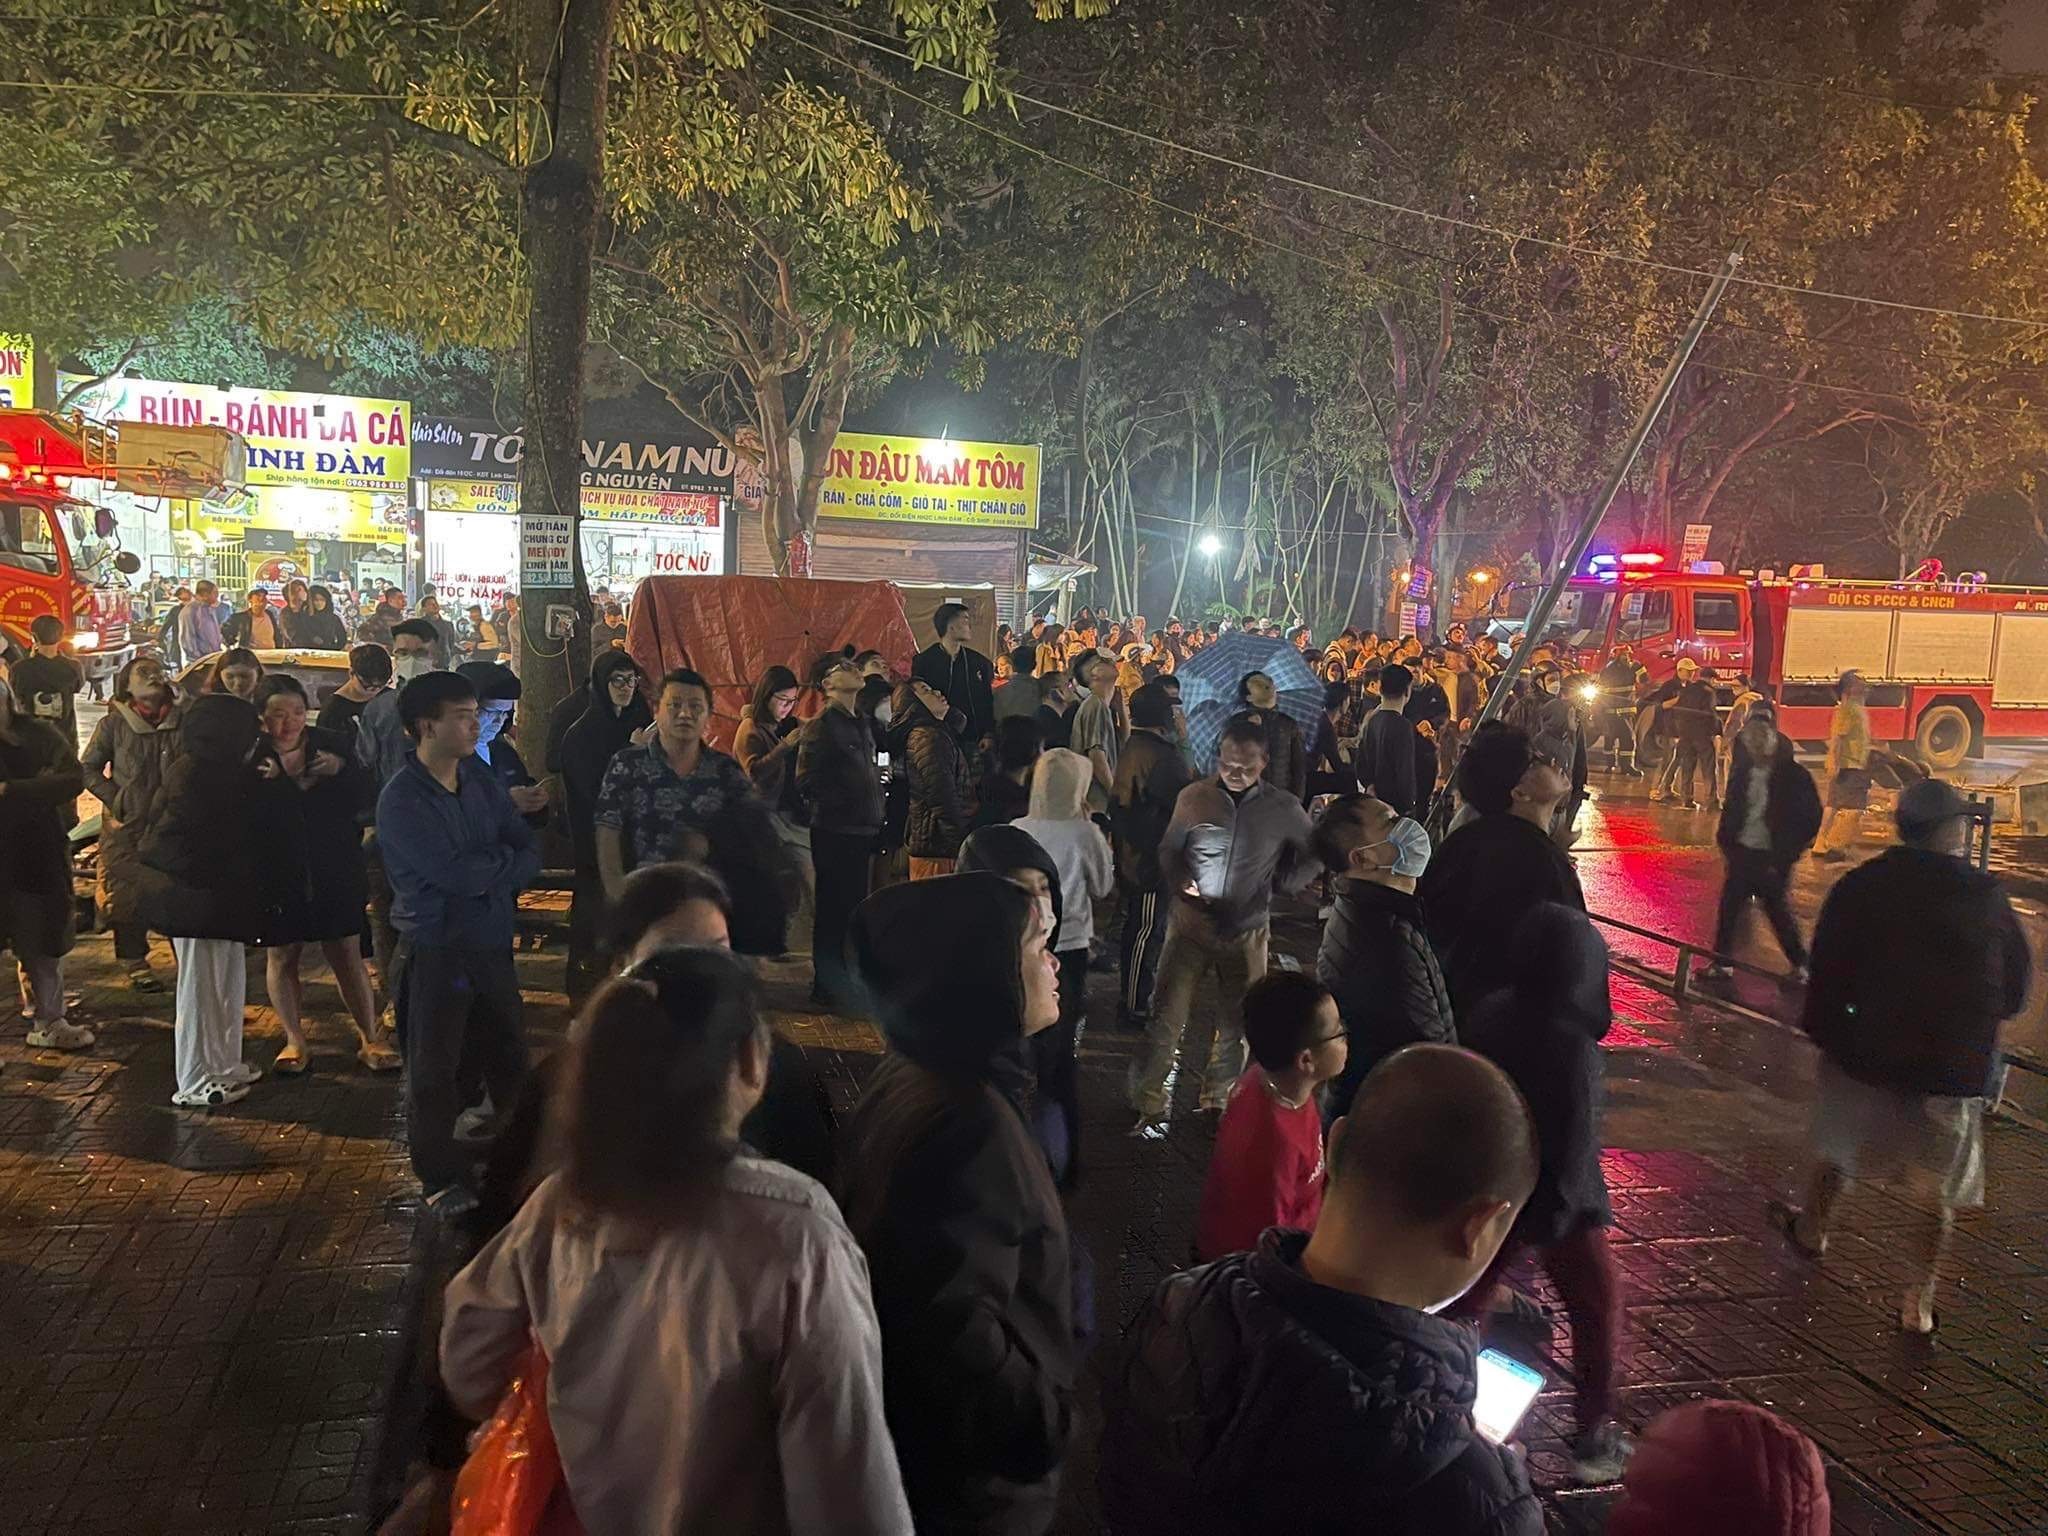 Cháy tầng cao chung cư đông dân nhất Hà Nội, cư dân ôm con tháo chạy - ảnh 4